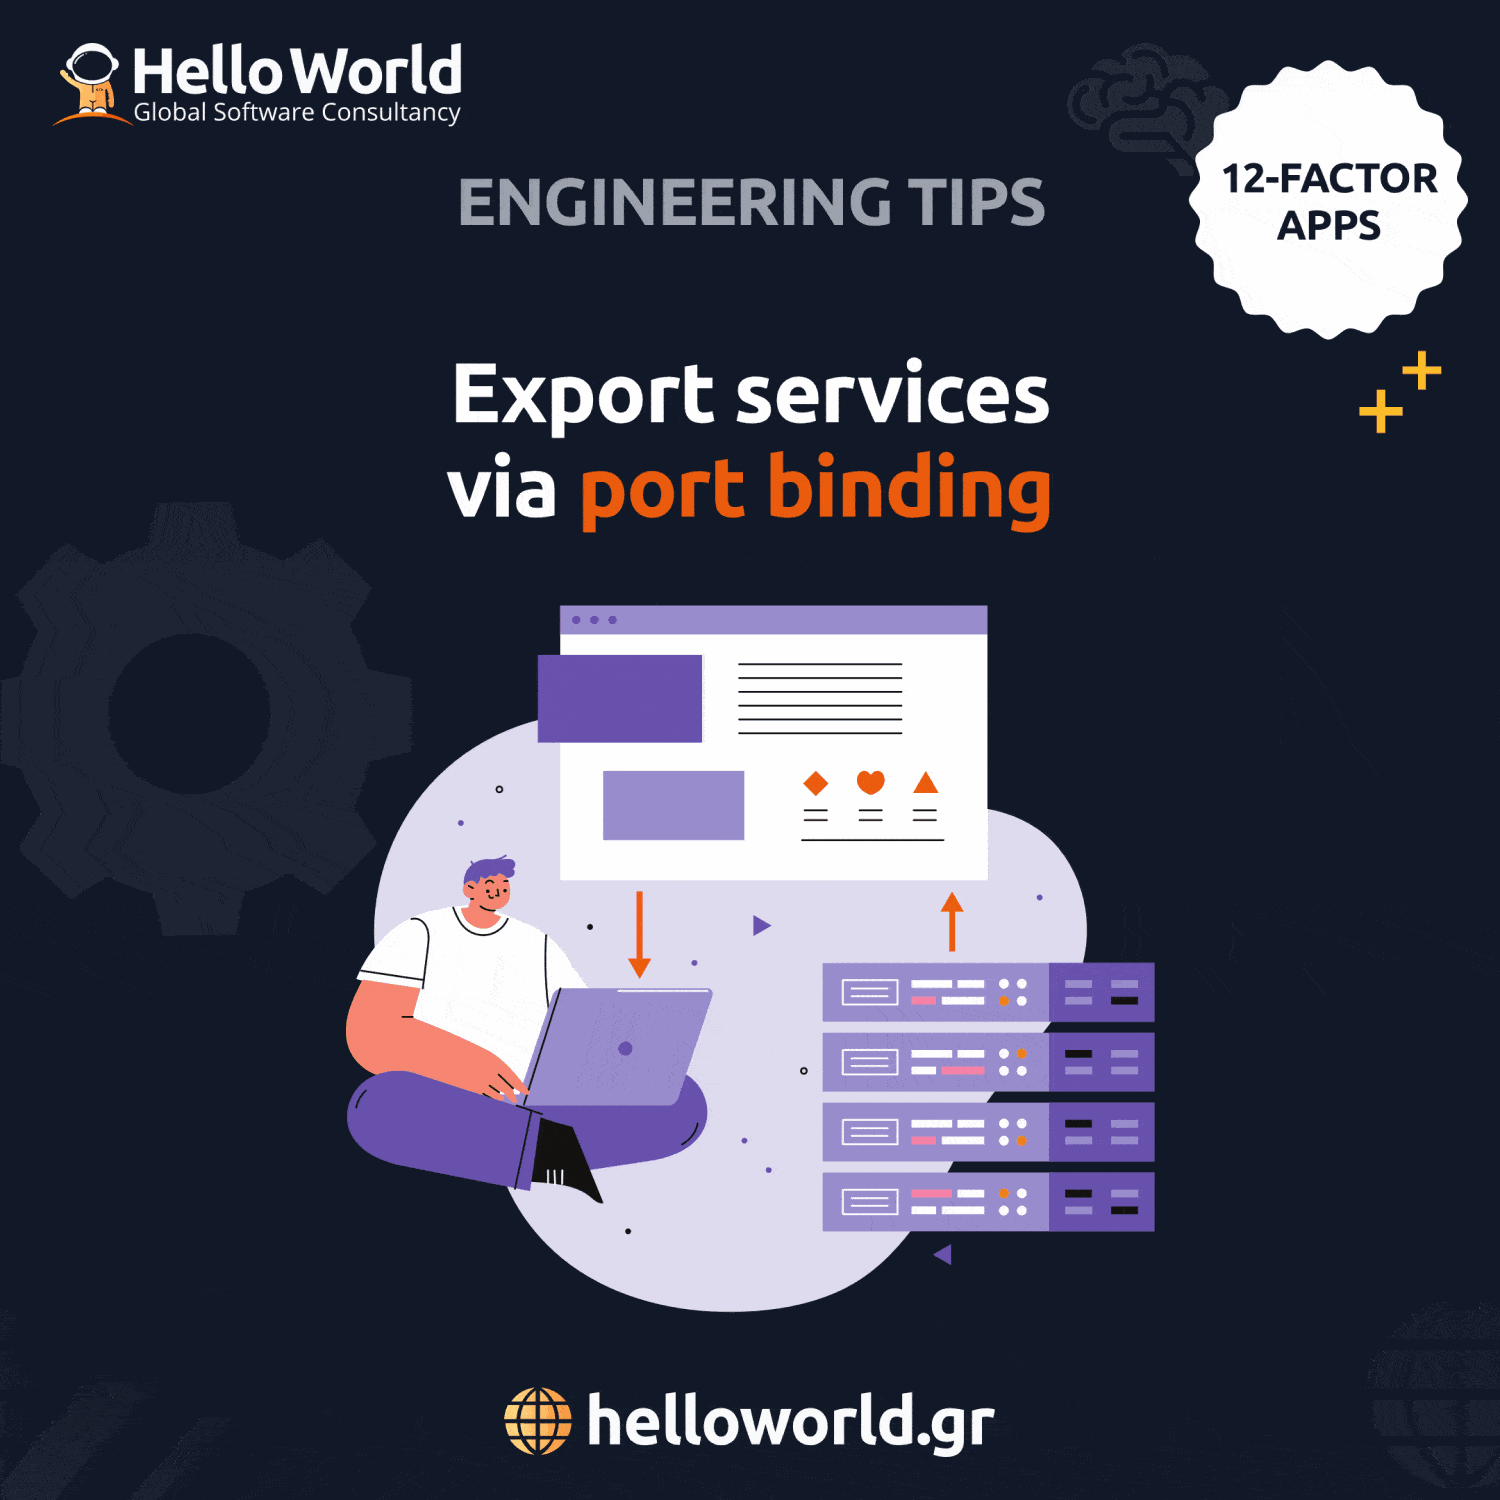 Port binding: Export services via port binding